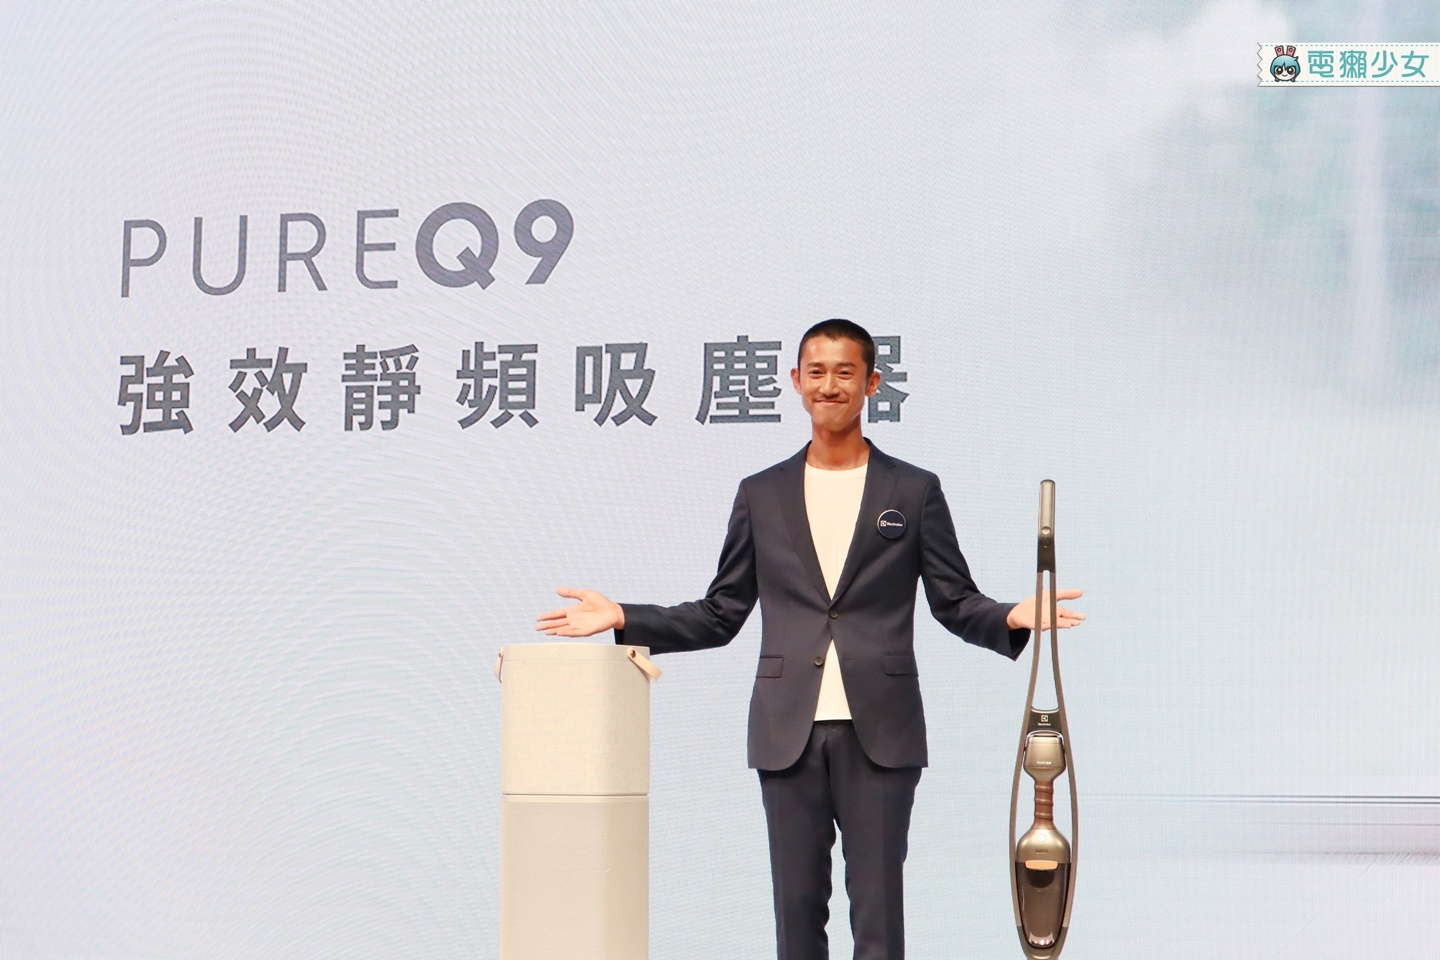 出門｜百年精品家電伊萊克斯 空氣清淨機Pure A9與強效吸塵器Pure Q9正式在台上市